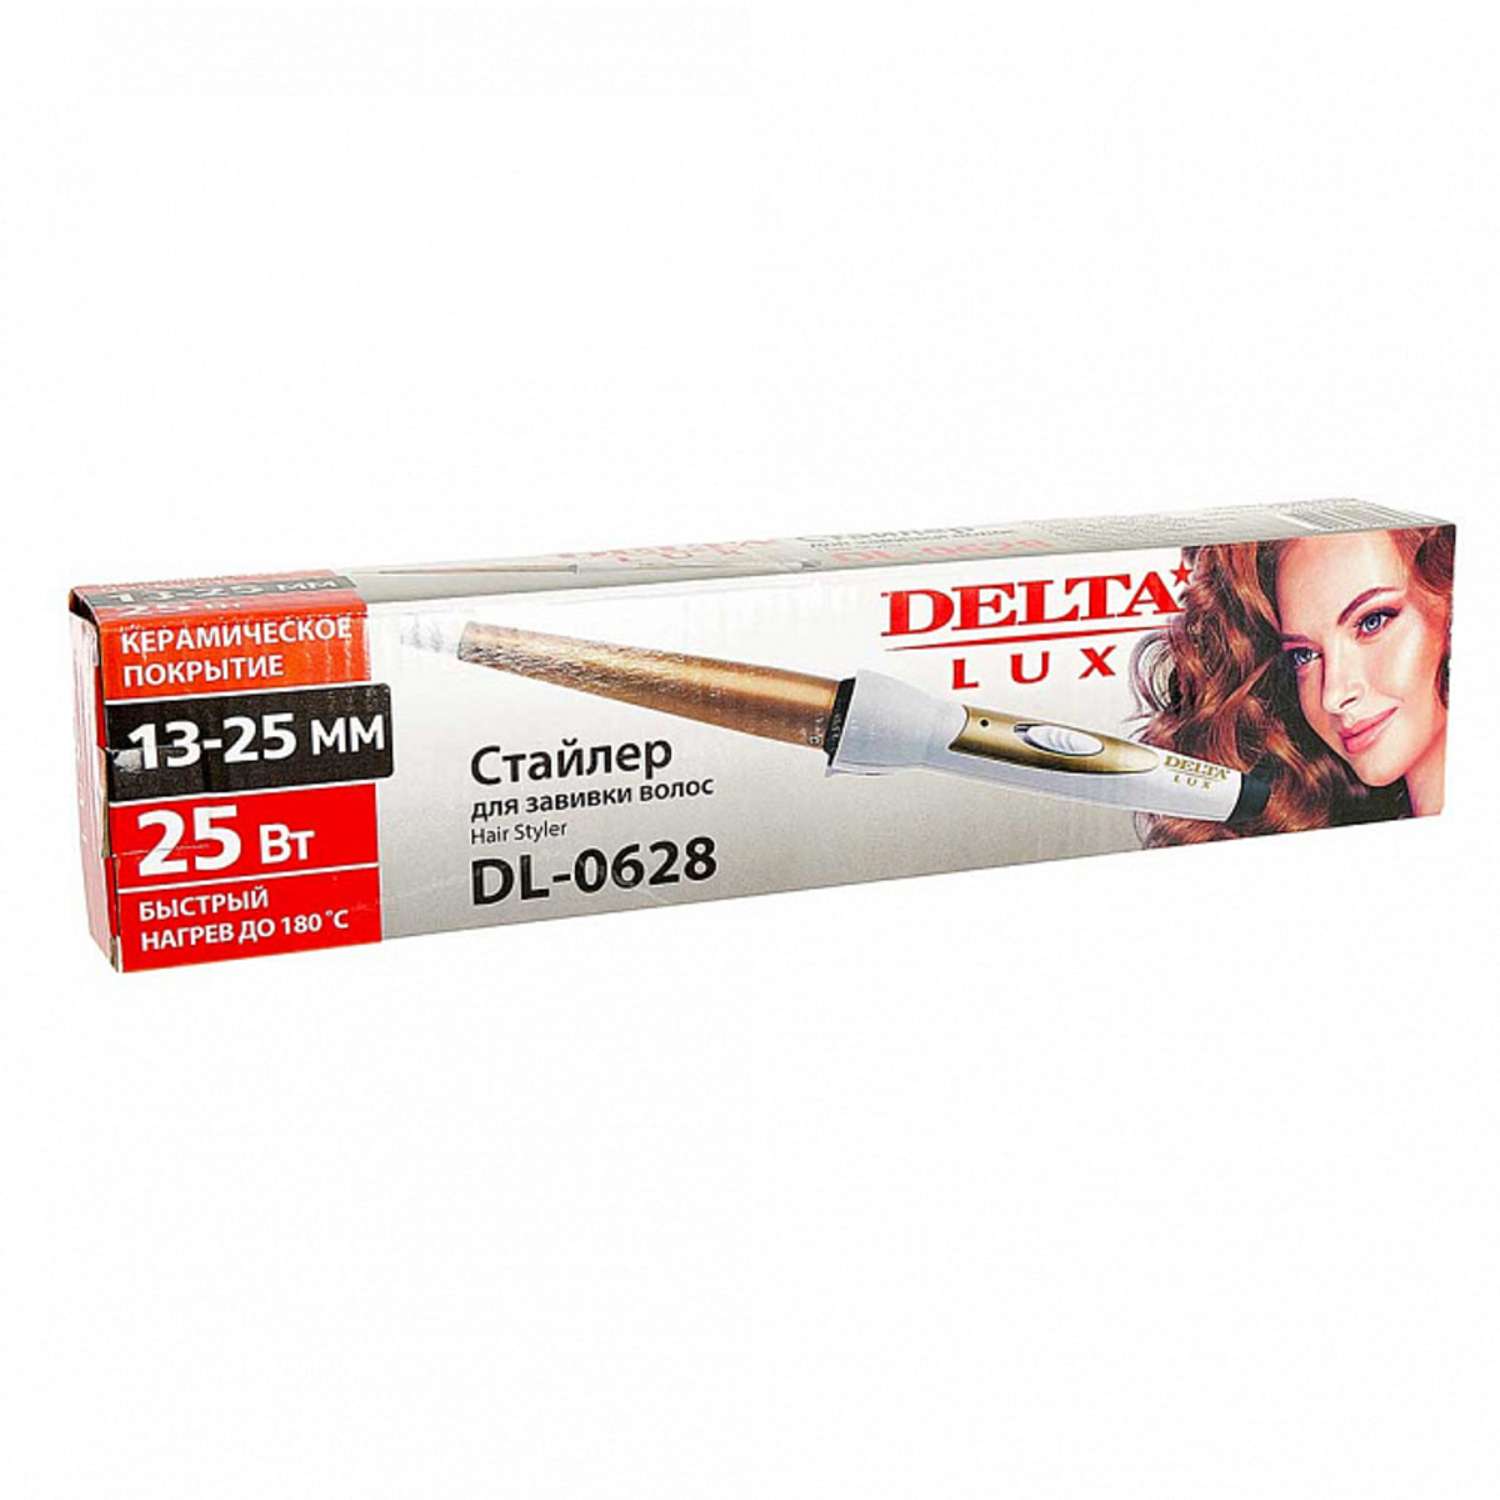 Стайлер для завивки волос Delta Lux DL-0628 белый с золотым керамическое покрытие d13 мм 25 Вт - фото 3